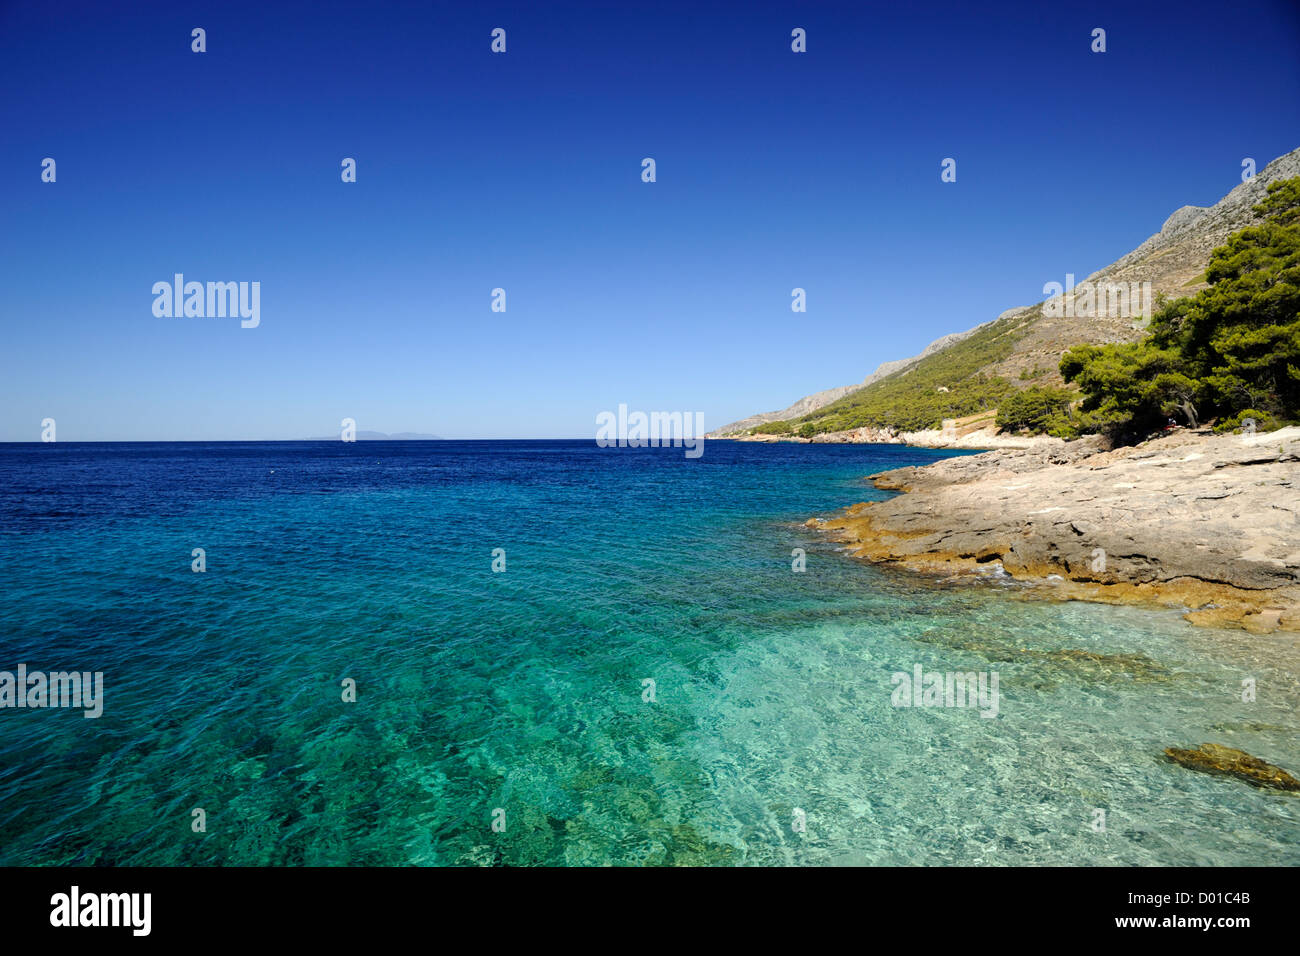 Croatia, Dalmatia, Hvar island, southern coast, Bojanic Stock Photo